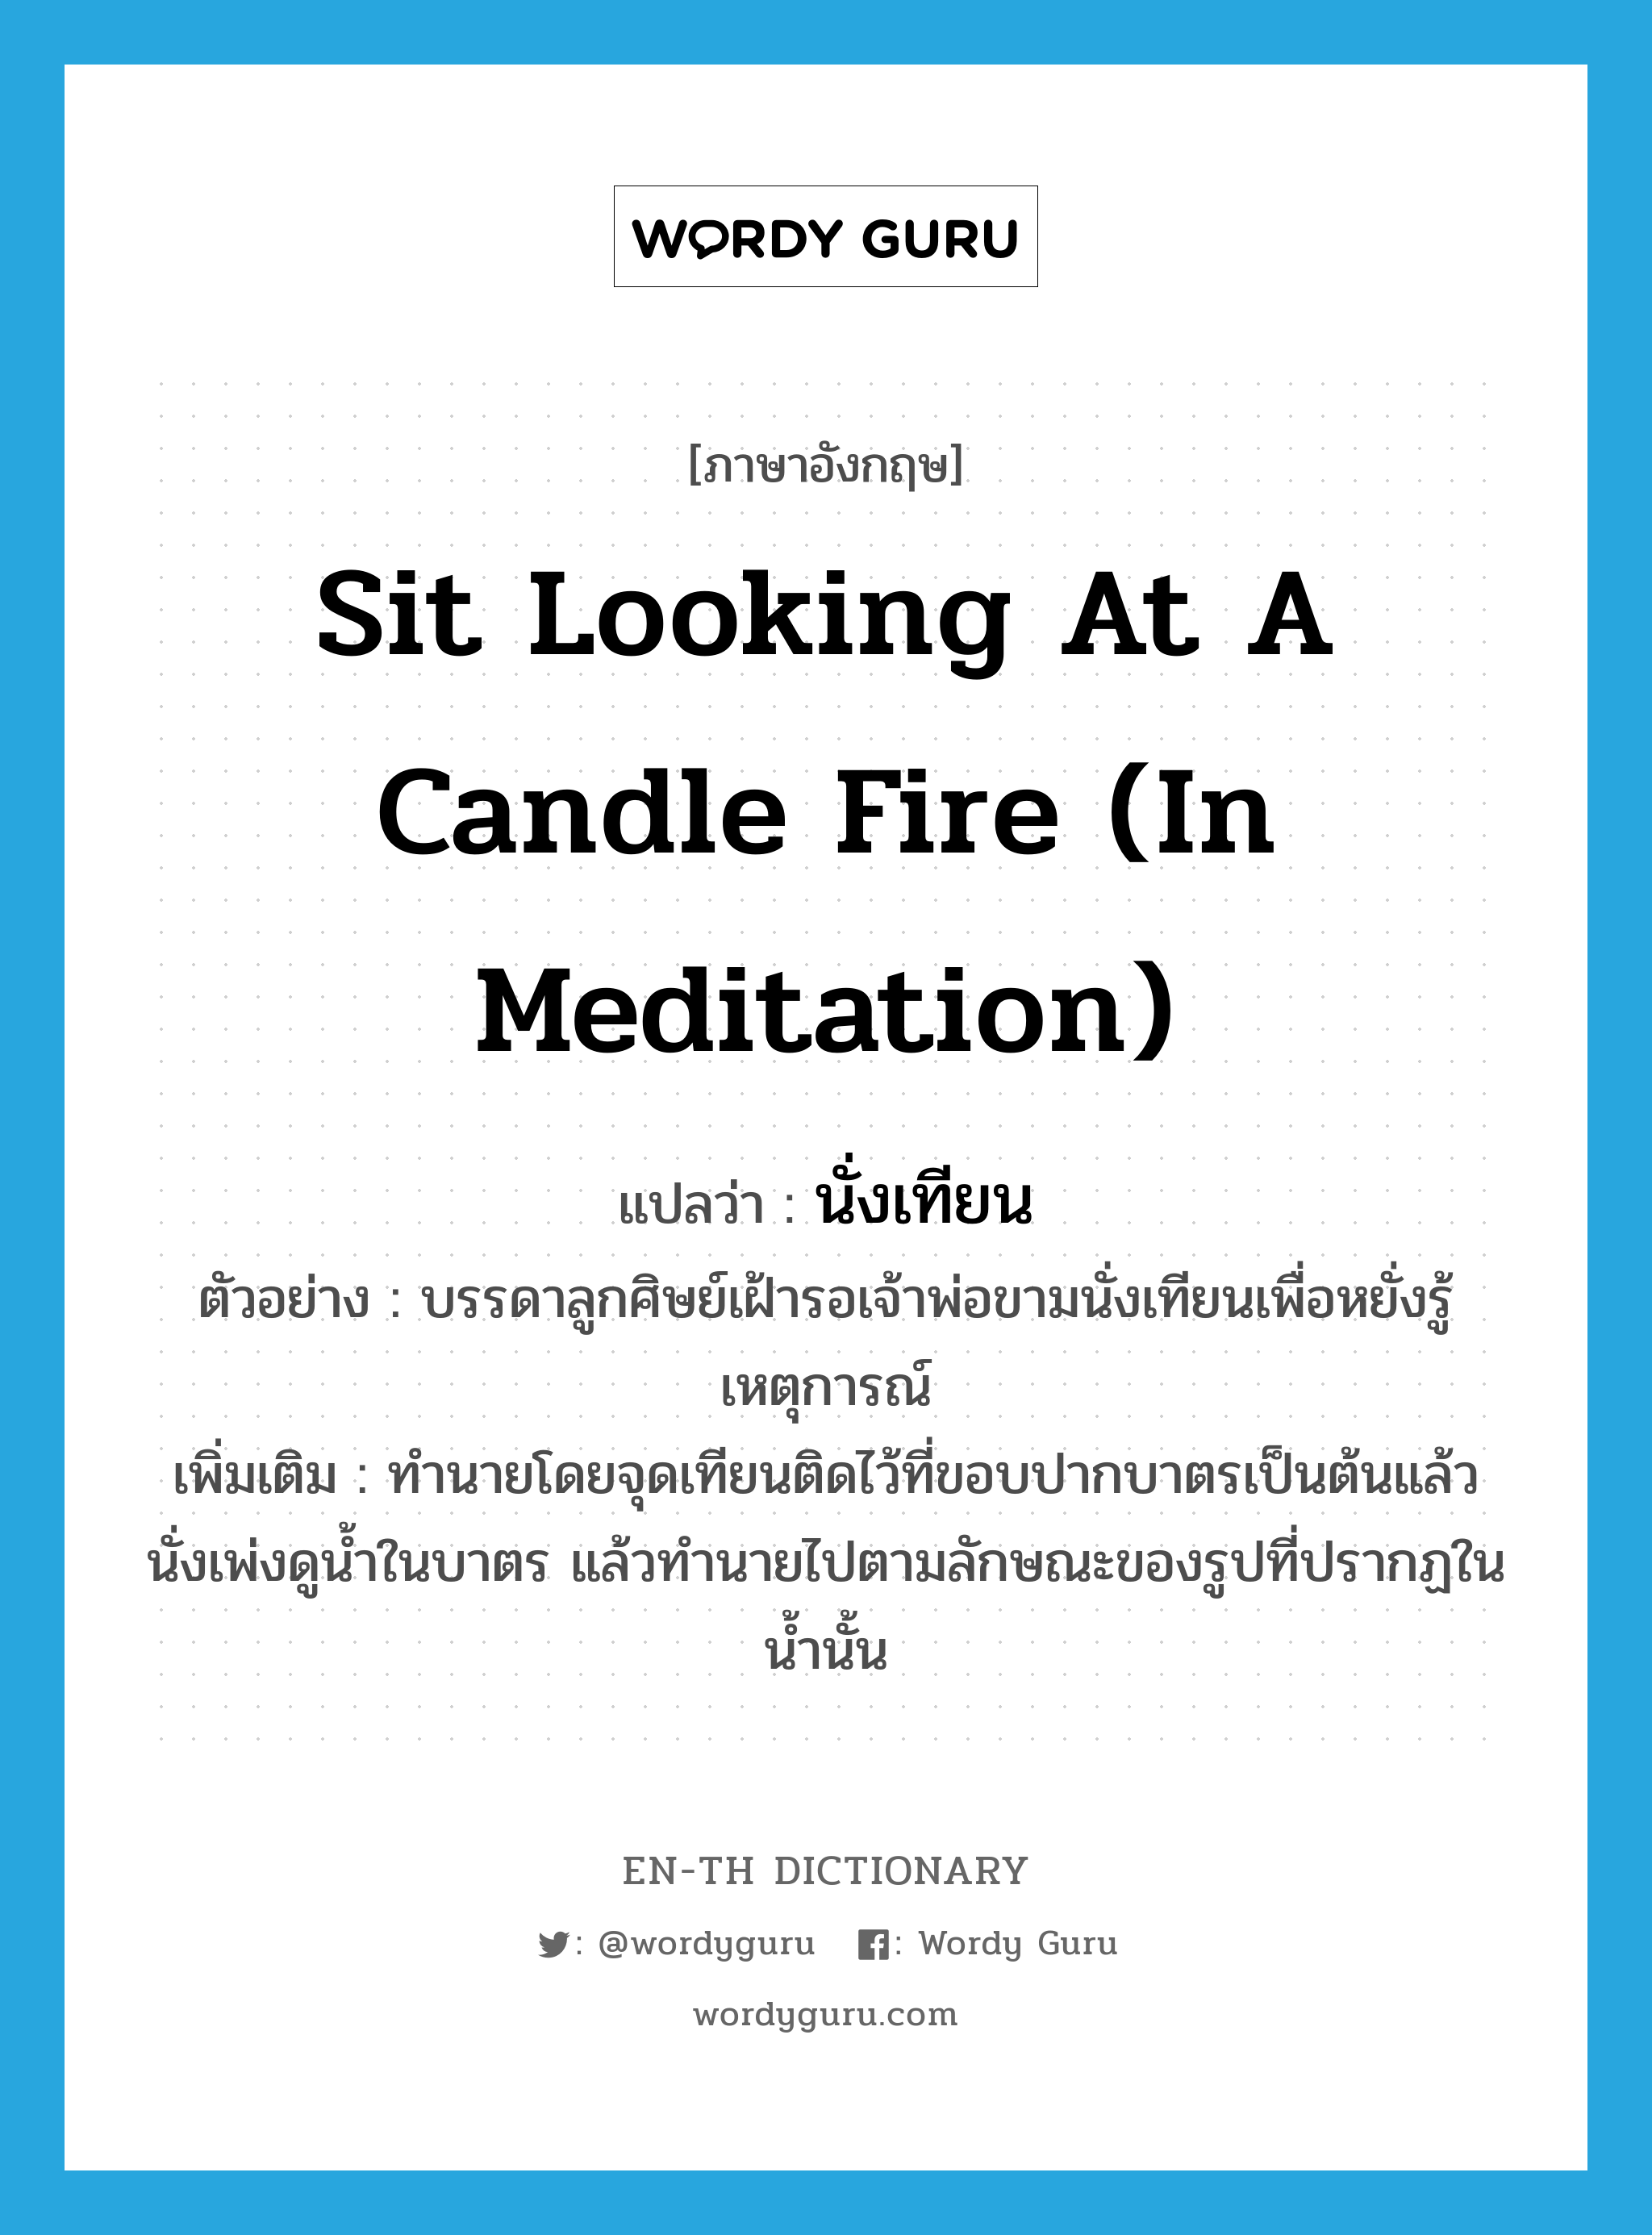 นั่งเทียน ภาษาอังกฤษ?, คำศัพท์ภาษาอังกฤษ นั่งเทียน แปลว่า sit looking at a candle fire (in meditation) ประเภท V ตัวอย่าง บรรดาลูกศิษย์เฝ้ารอเจ้าพ่อขามนั่งเทียนเพื่อหยั่งรู้เหตุการณ์ เพิ่มเติม ทำนายโดยจุดเทียนติดไว้ที่ขอบปากบาตรเป็นต้นแล้วนั่งเพ่งดูน้ำในบาตร แล้วทำนายไปตามลักษณะของรูปที่ปรากฏในน้ำนั้น หมวด V